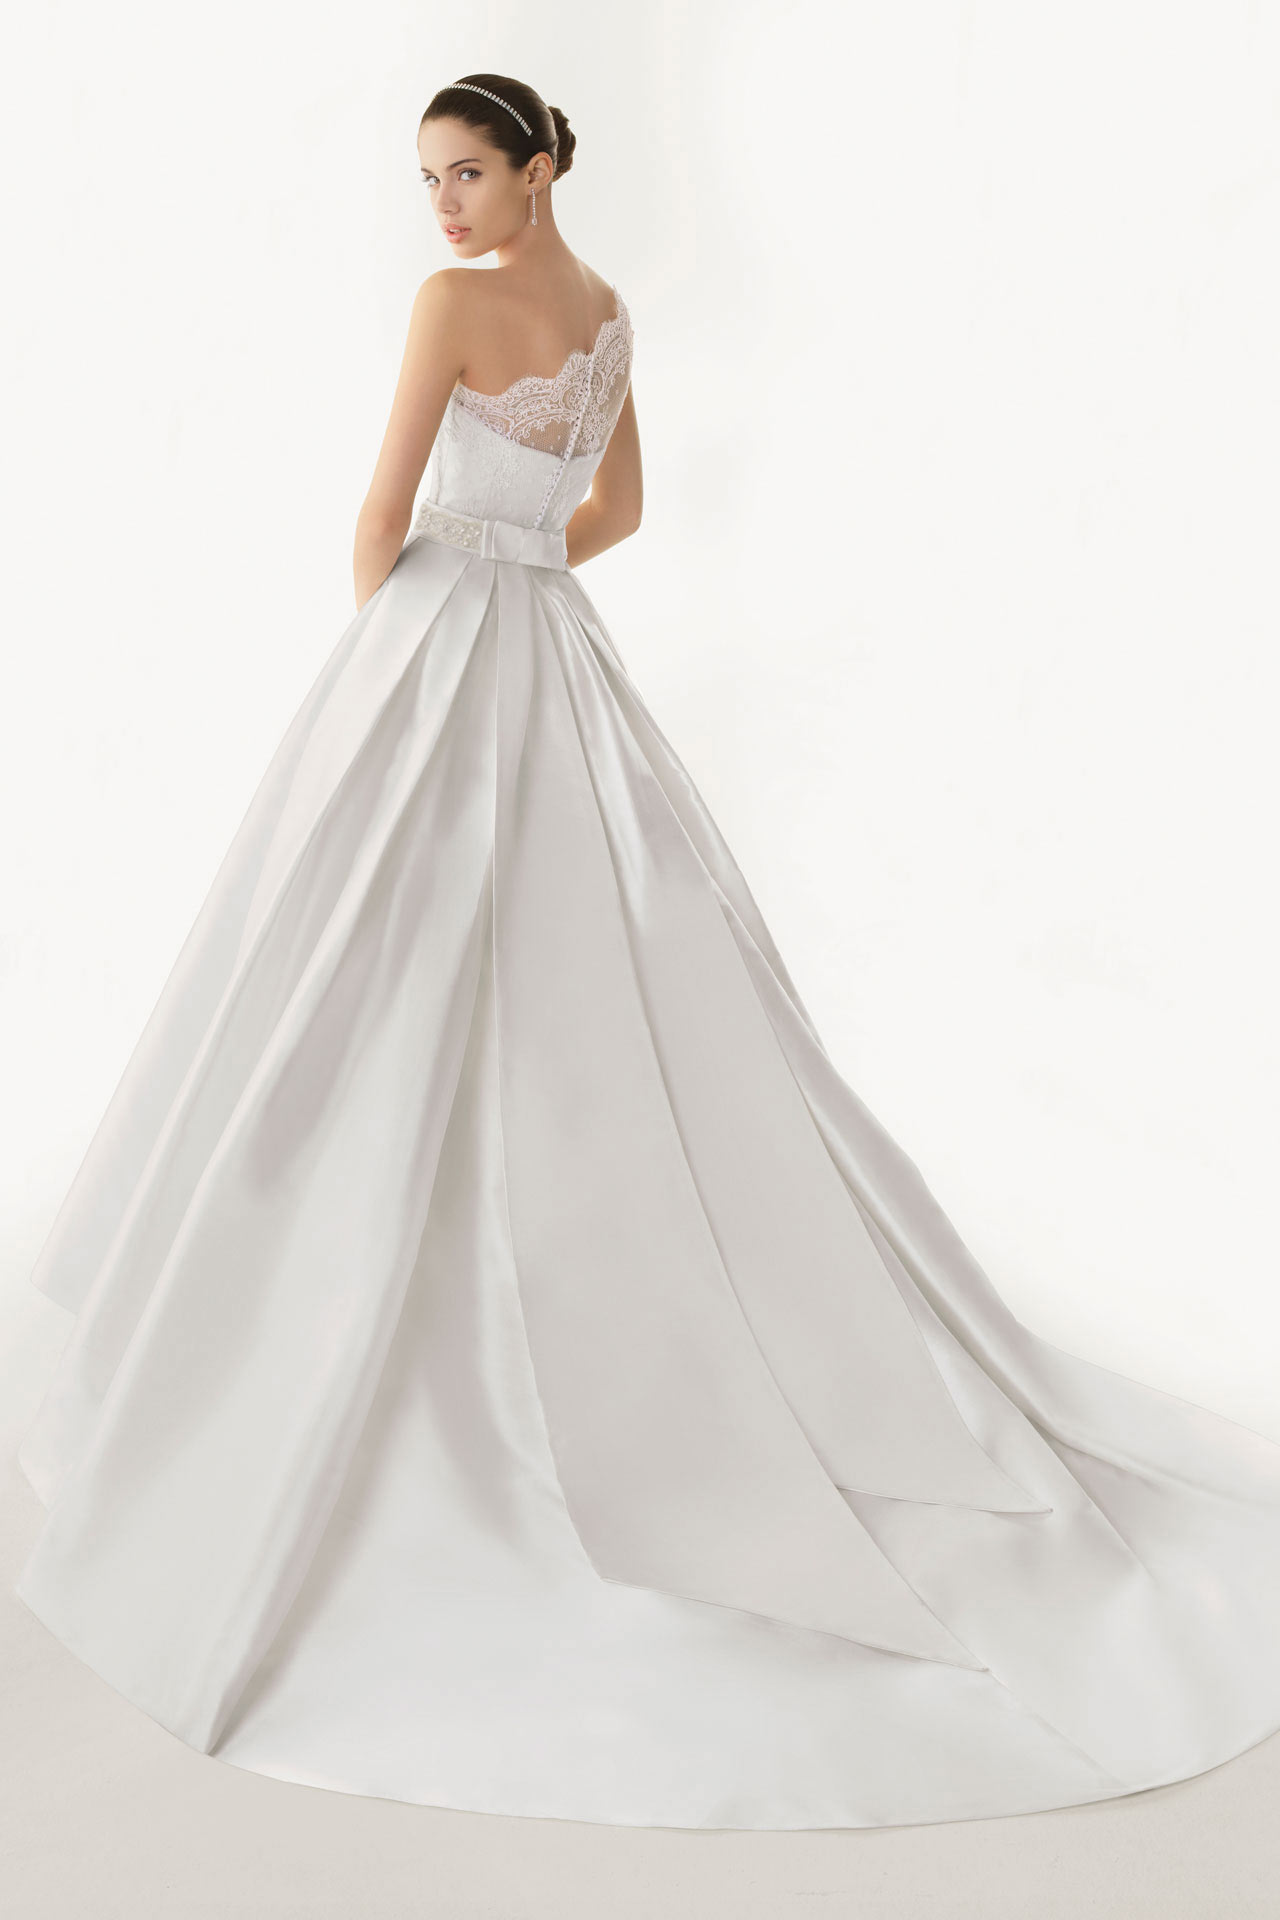 Magnifique robe blanche pour mariage classique ornée de dentelle exquise